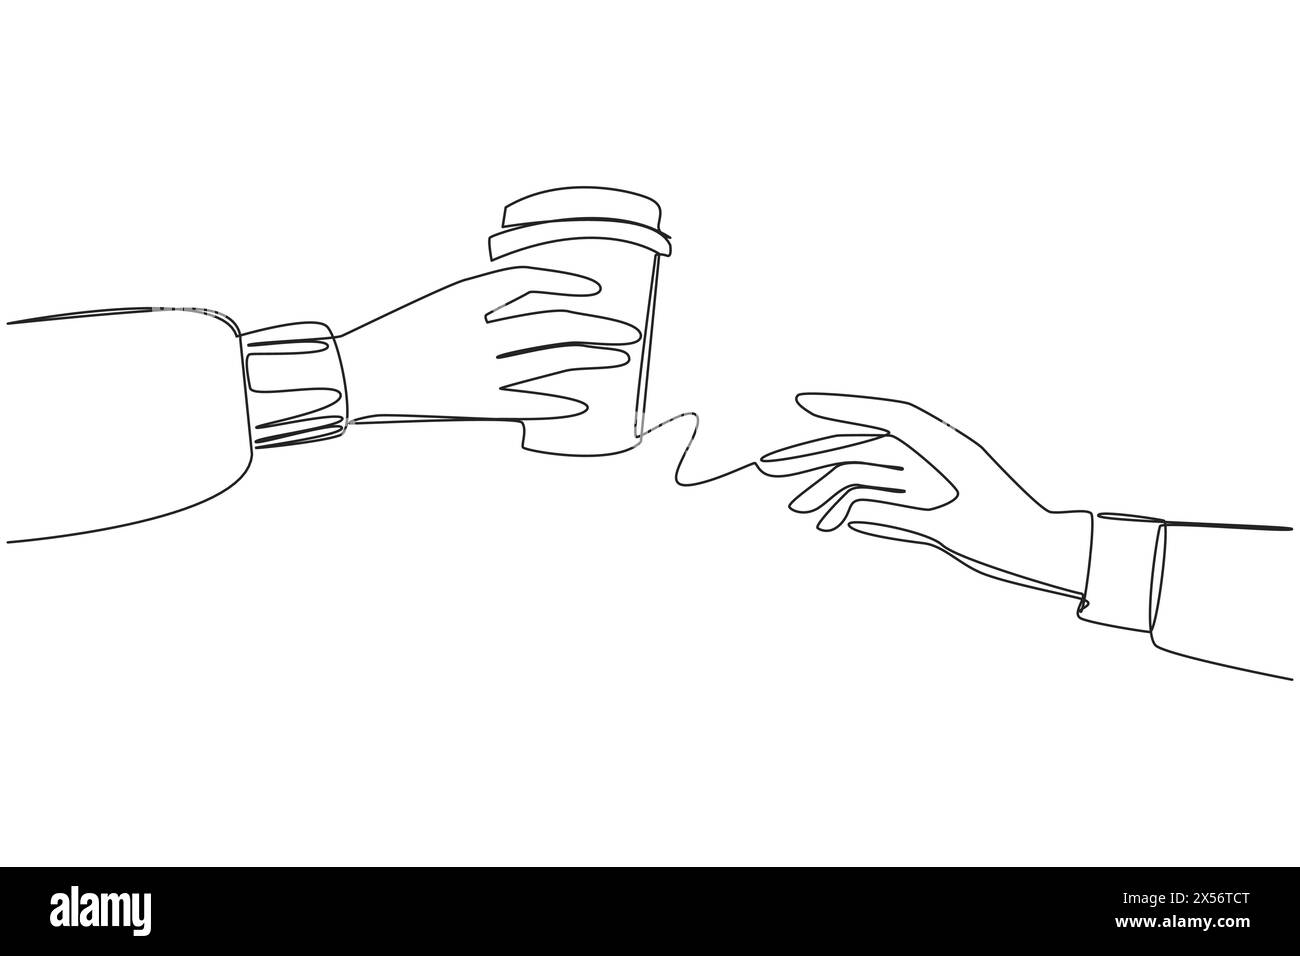 Singola linea continua per disegnare a mano con tazza di carta. Di solito contiene tè o caffè caldo. Condividi momenti di calore. Godetevi momenti di relax insieme. Toge Illustrazione Vettoriale